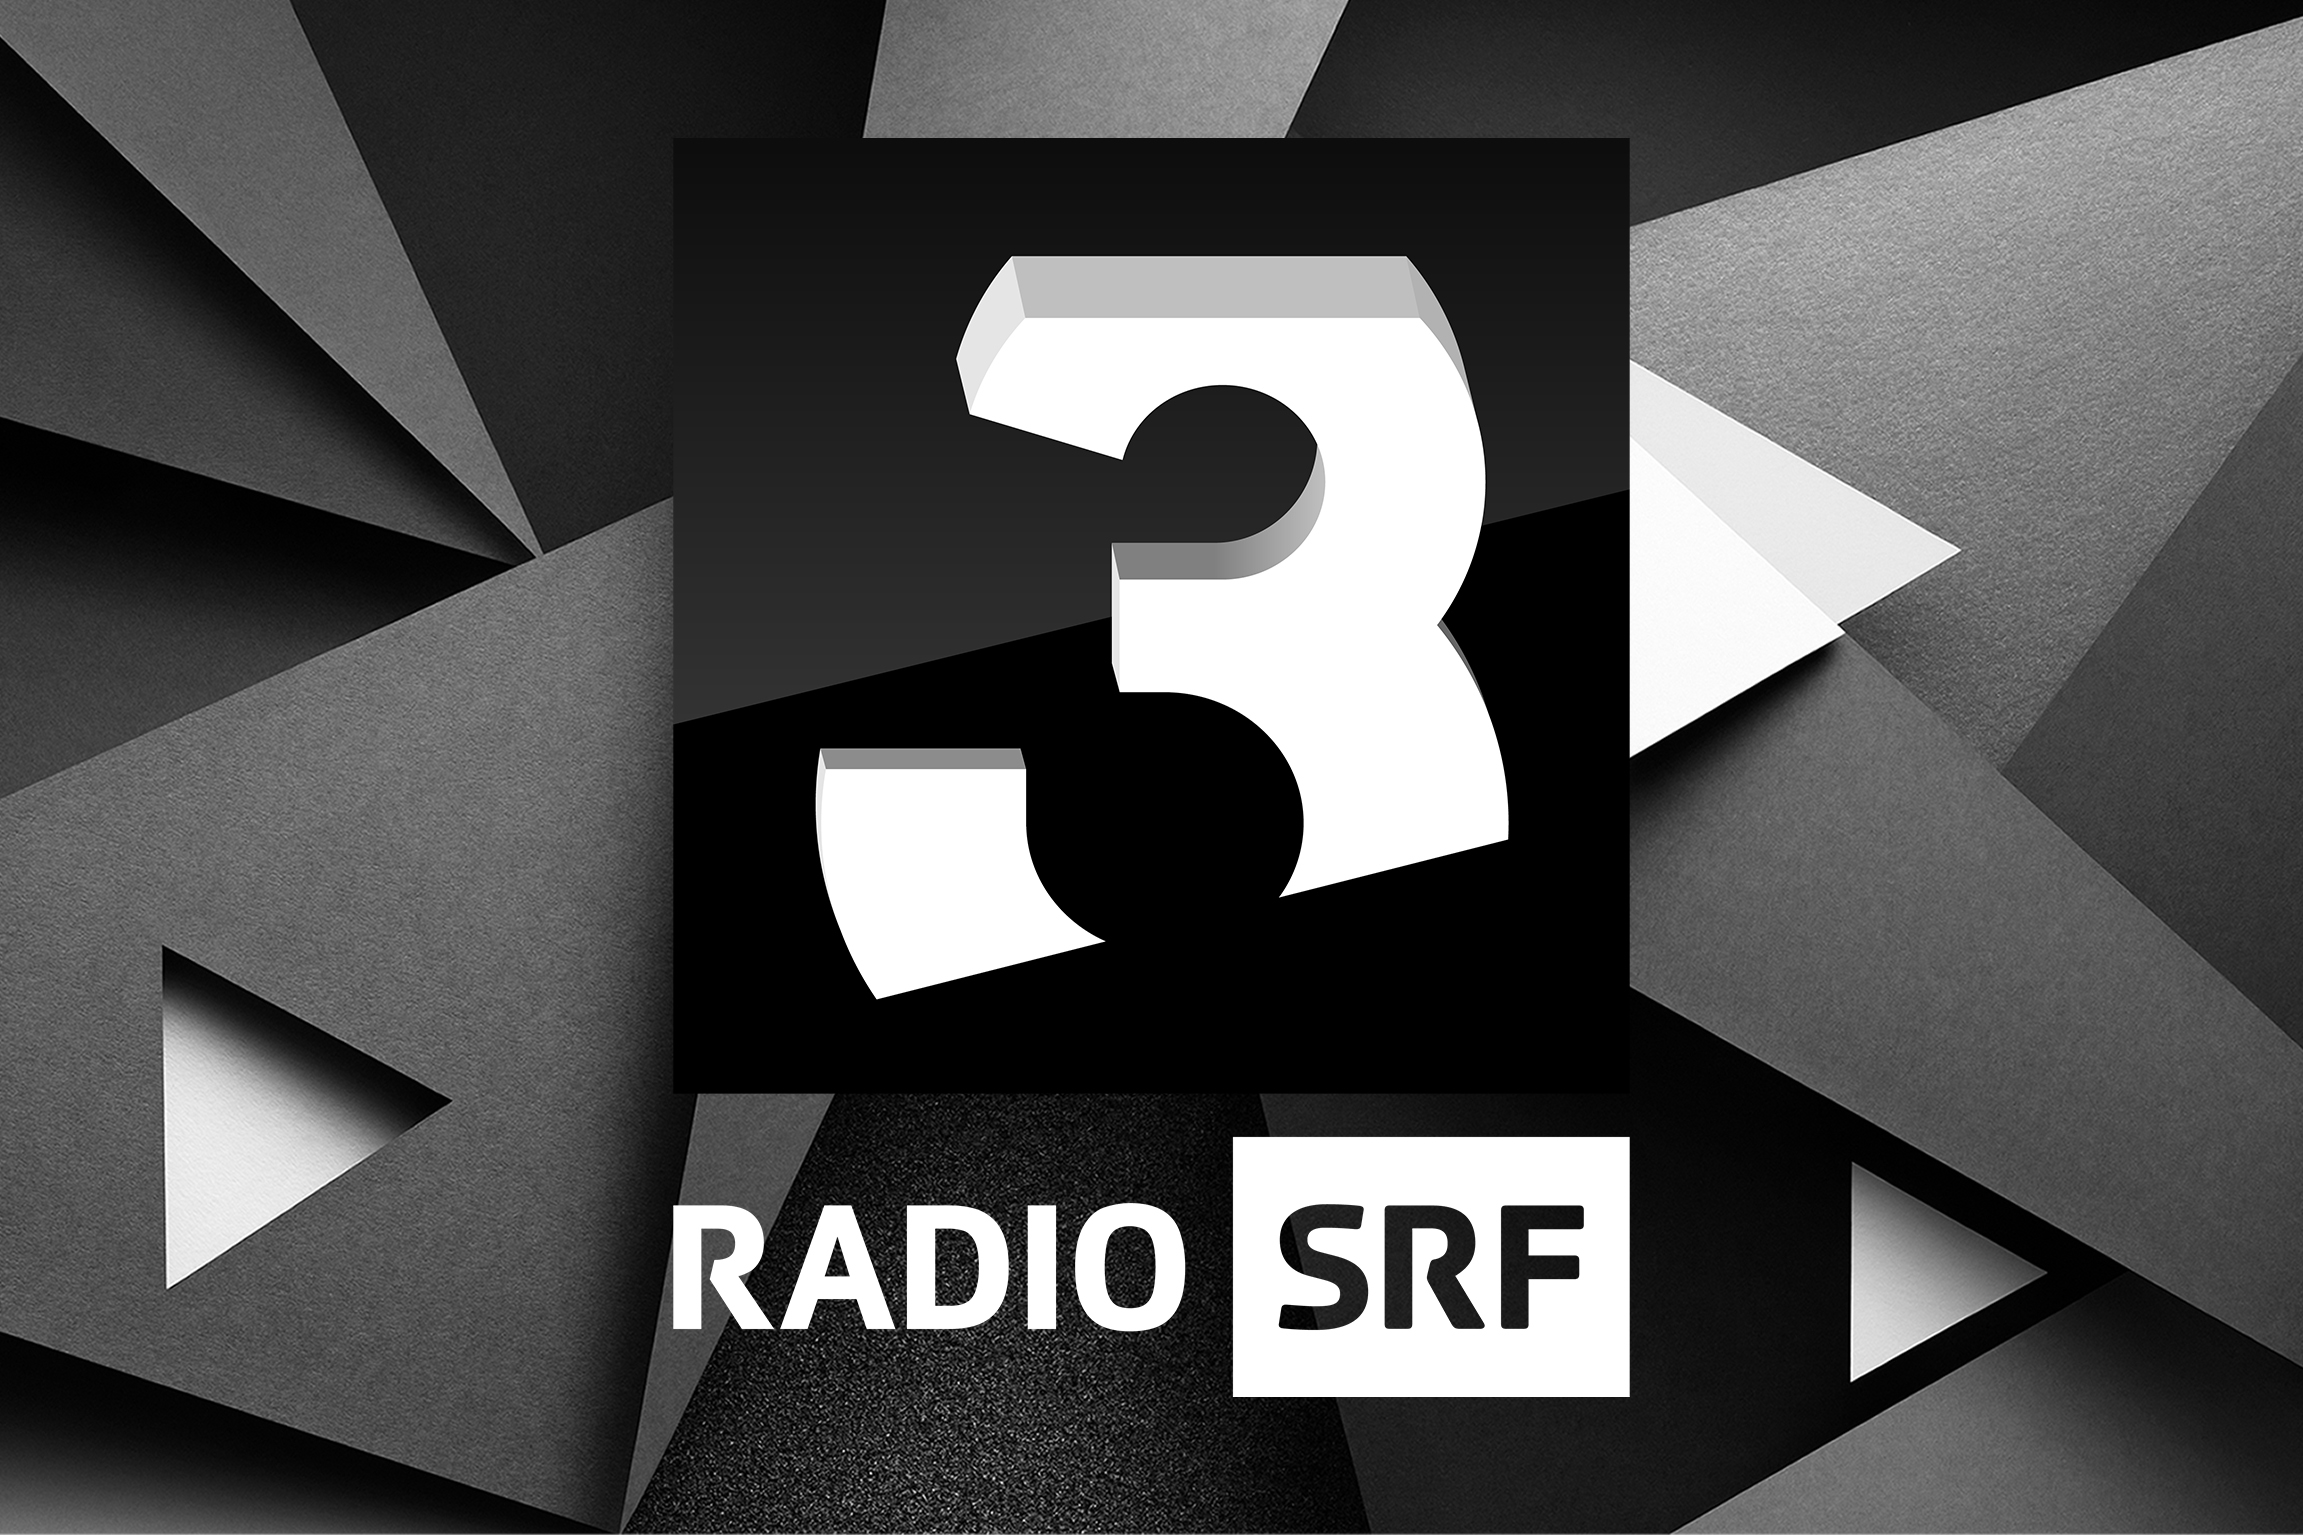 Radio SRF 3 Logo